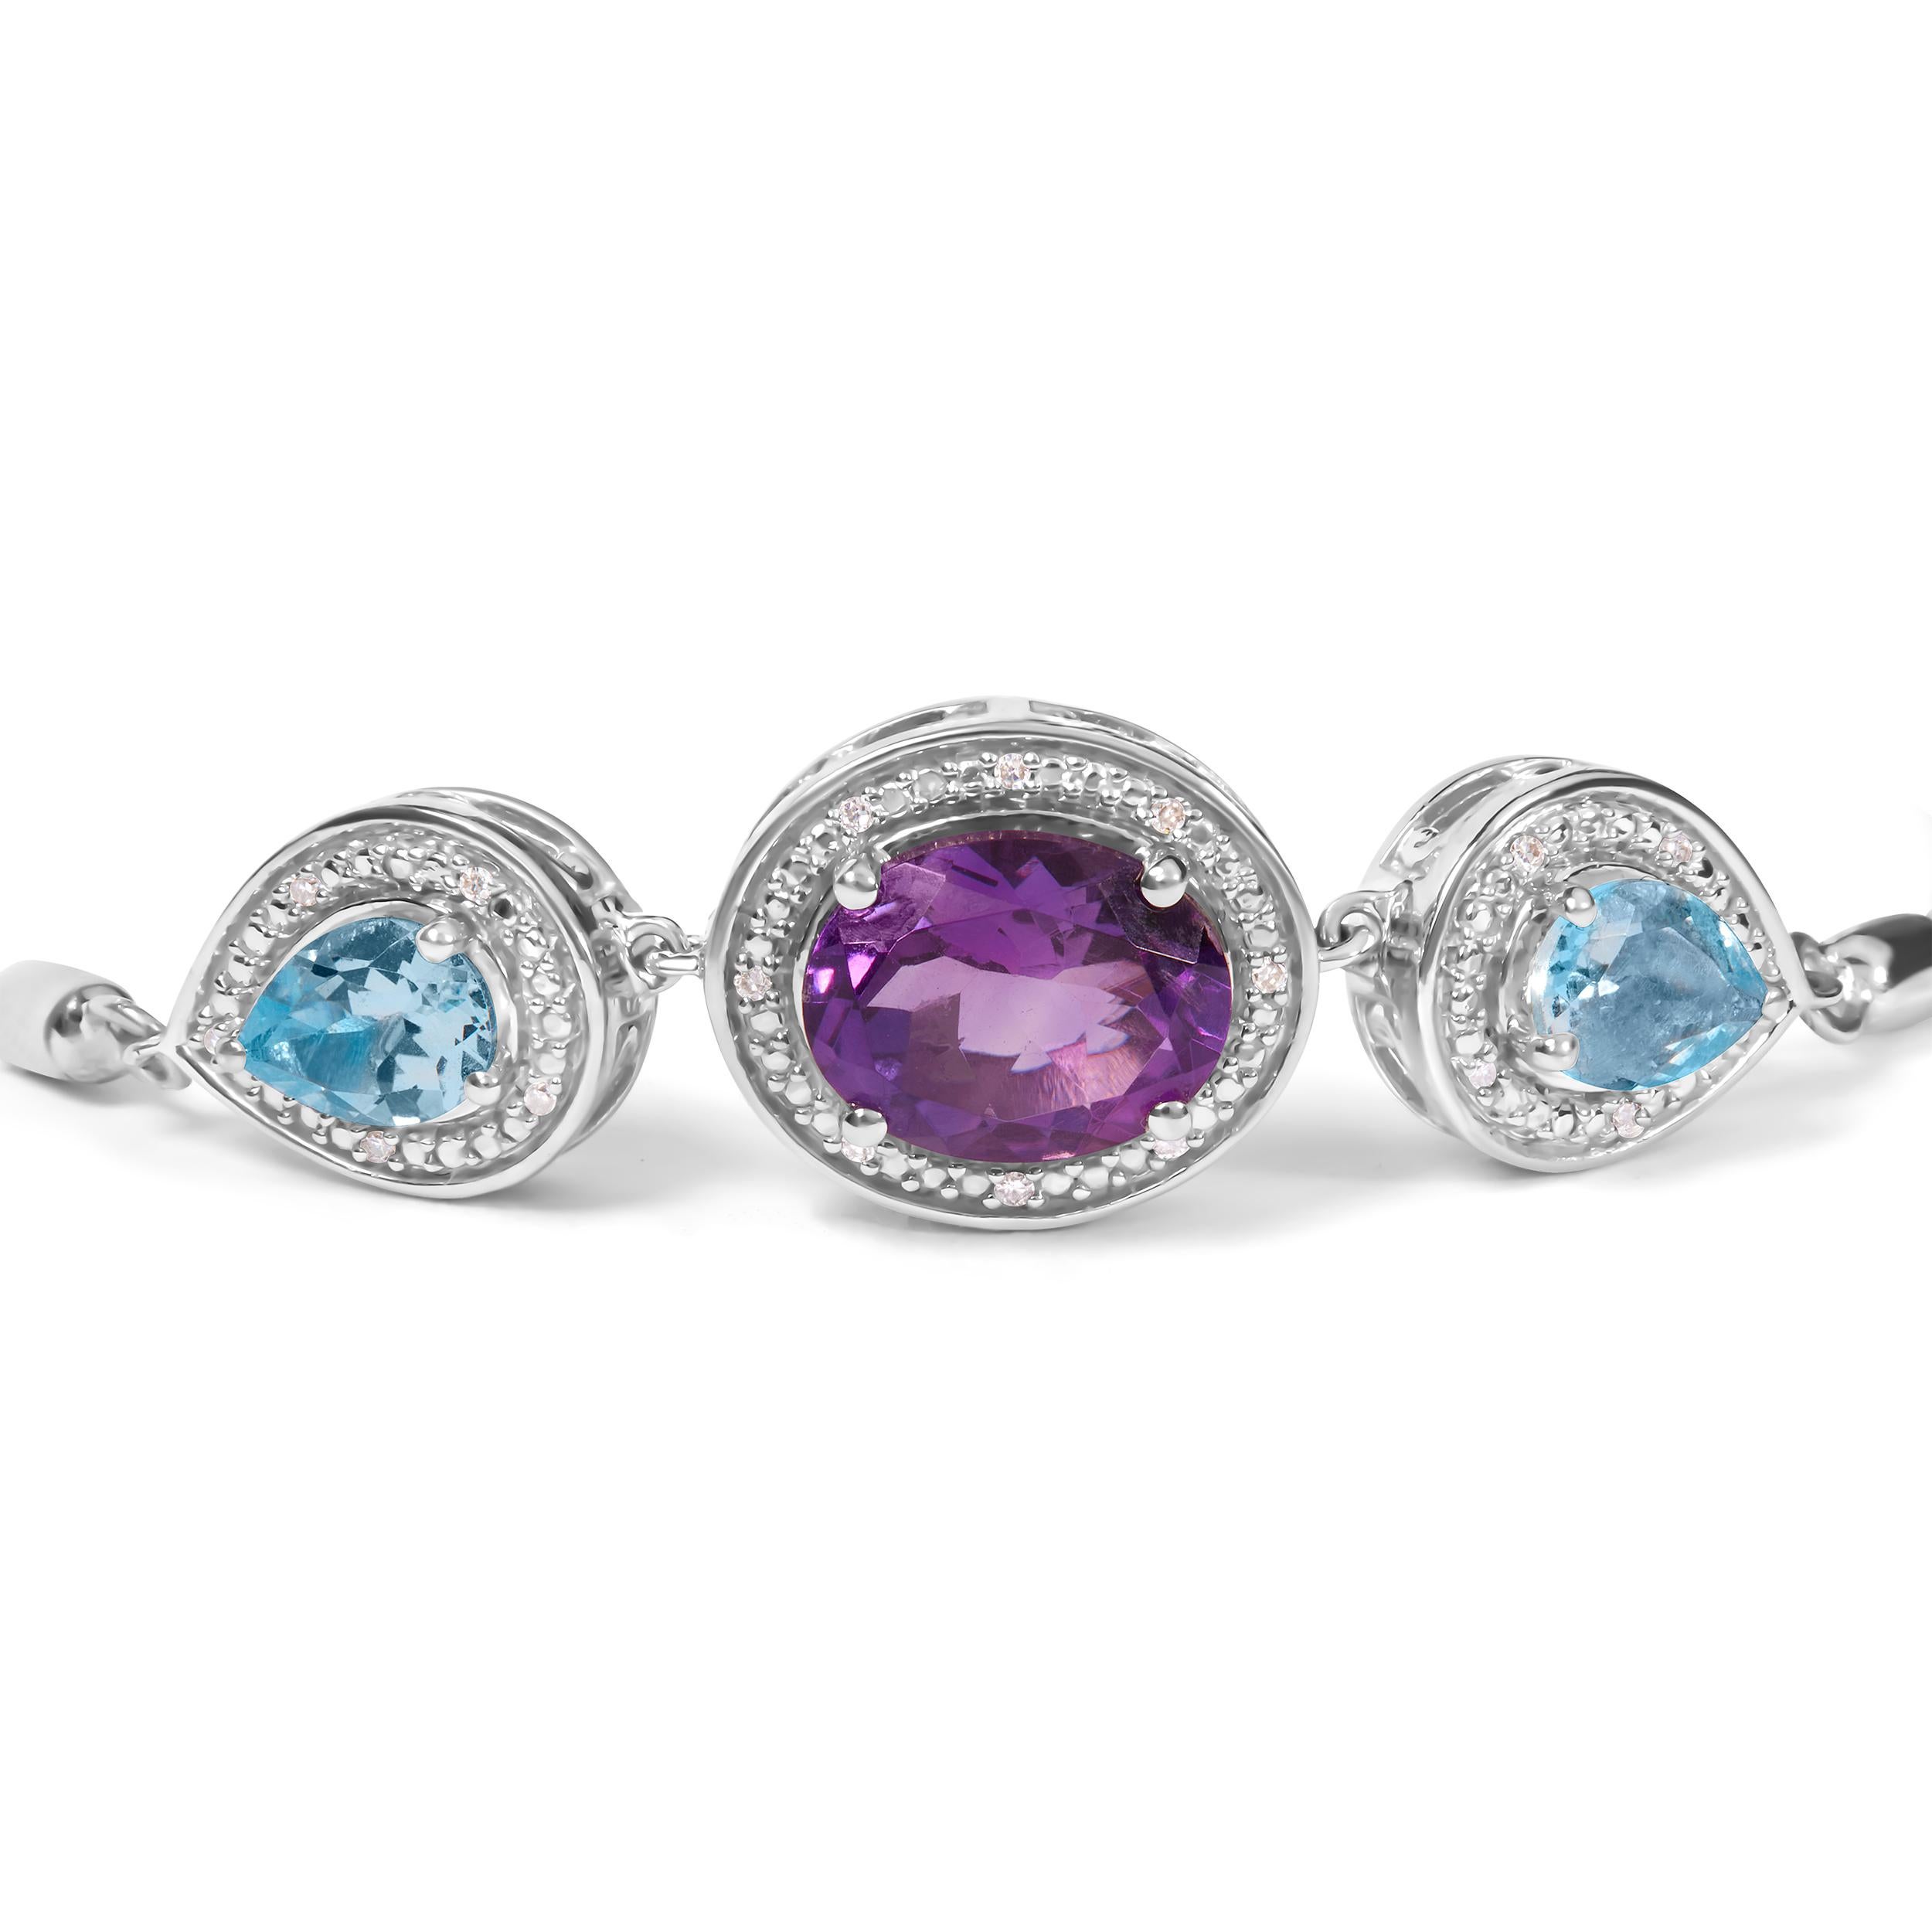 Ce bracelet Lariat Bolo en argent 925 est une pièce luxueuse, parfaite pour toutes les occasions. Orné de trois magnifiques pierres précieuses, dont une éblouissante améthyste violette ovale de 10 x 8 mm et deux topazes bleues taillées en poire, ce